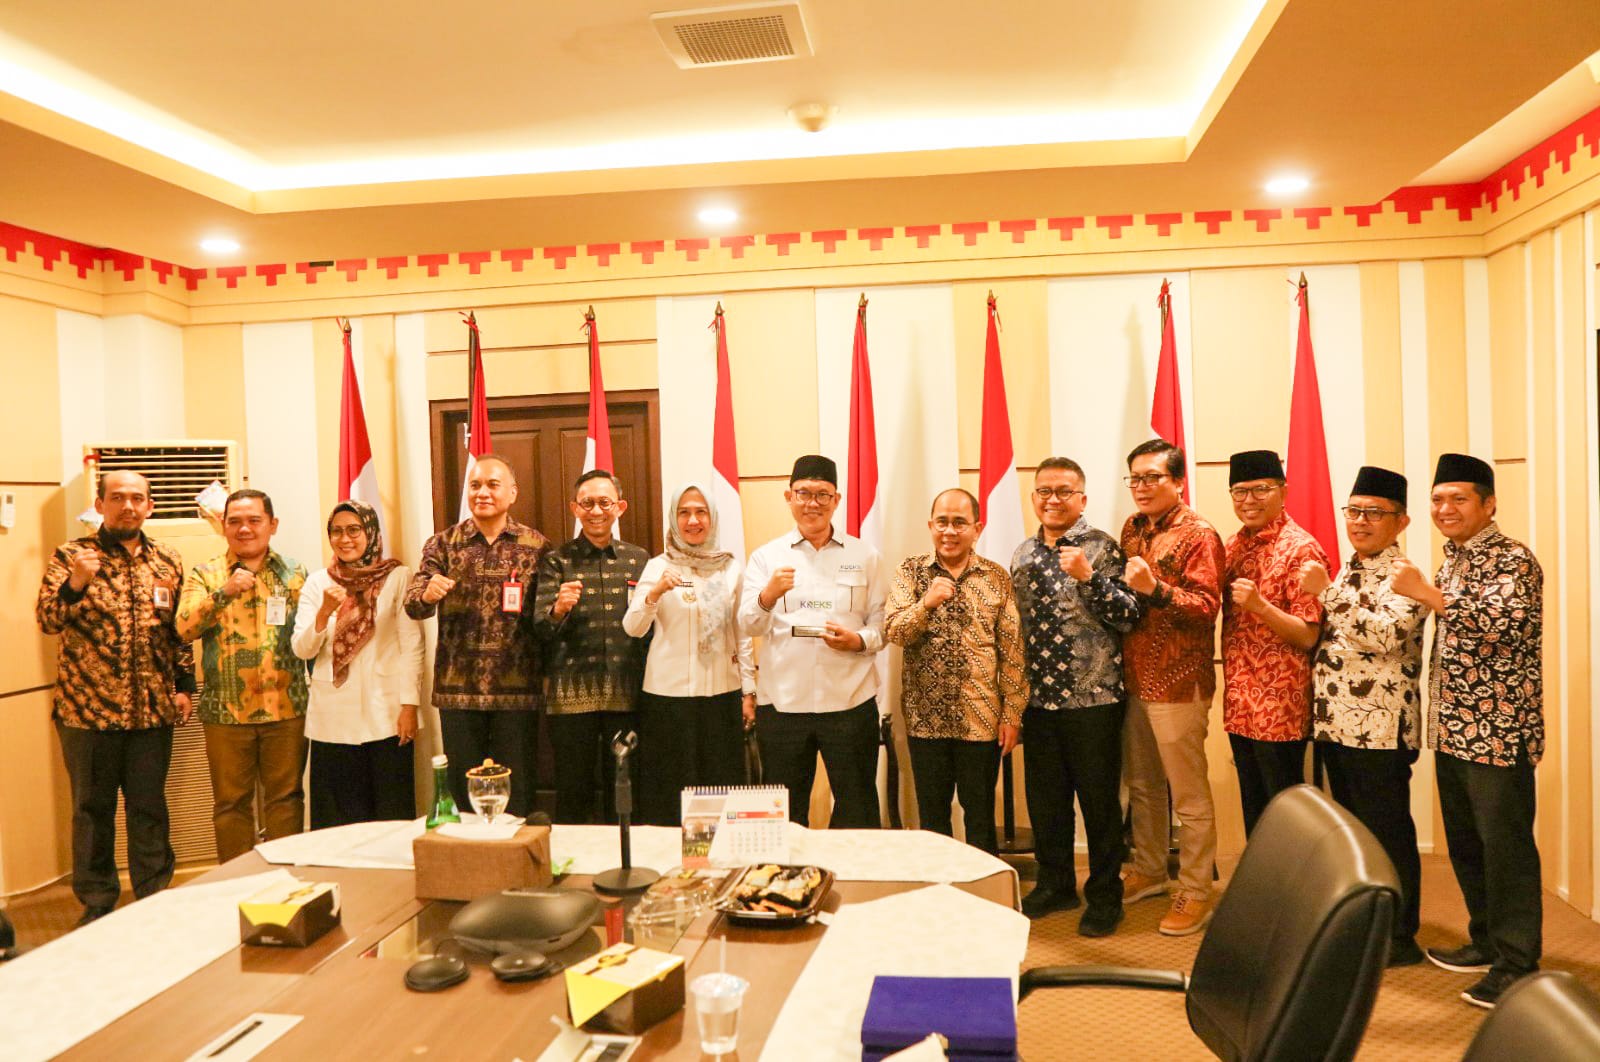 Sinergi KNEKS dan KDEKS Lampung untuk Ekonomi Syariah Lebih Kuat